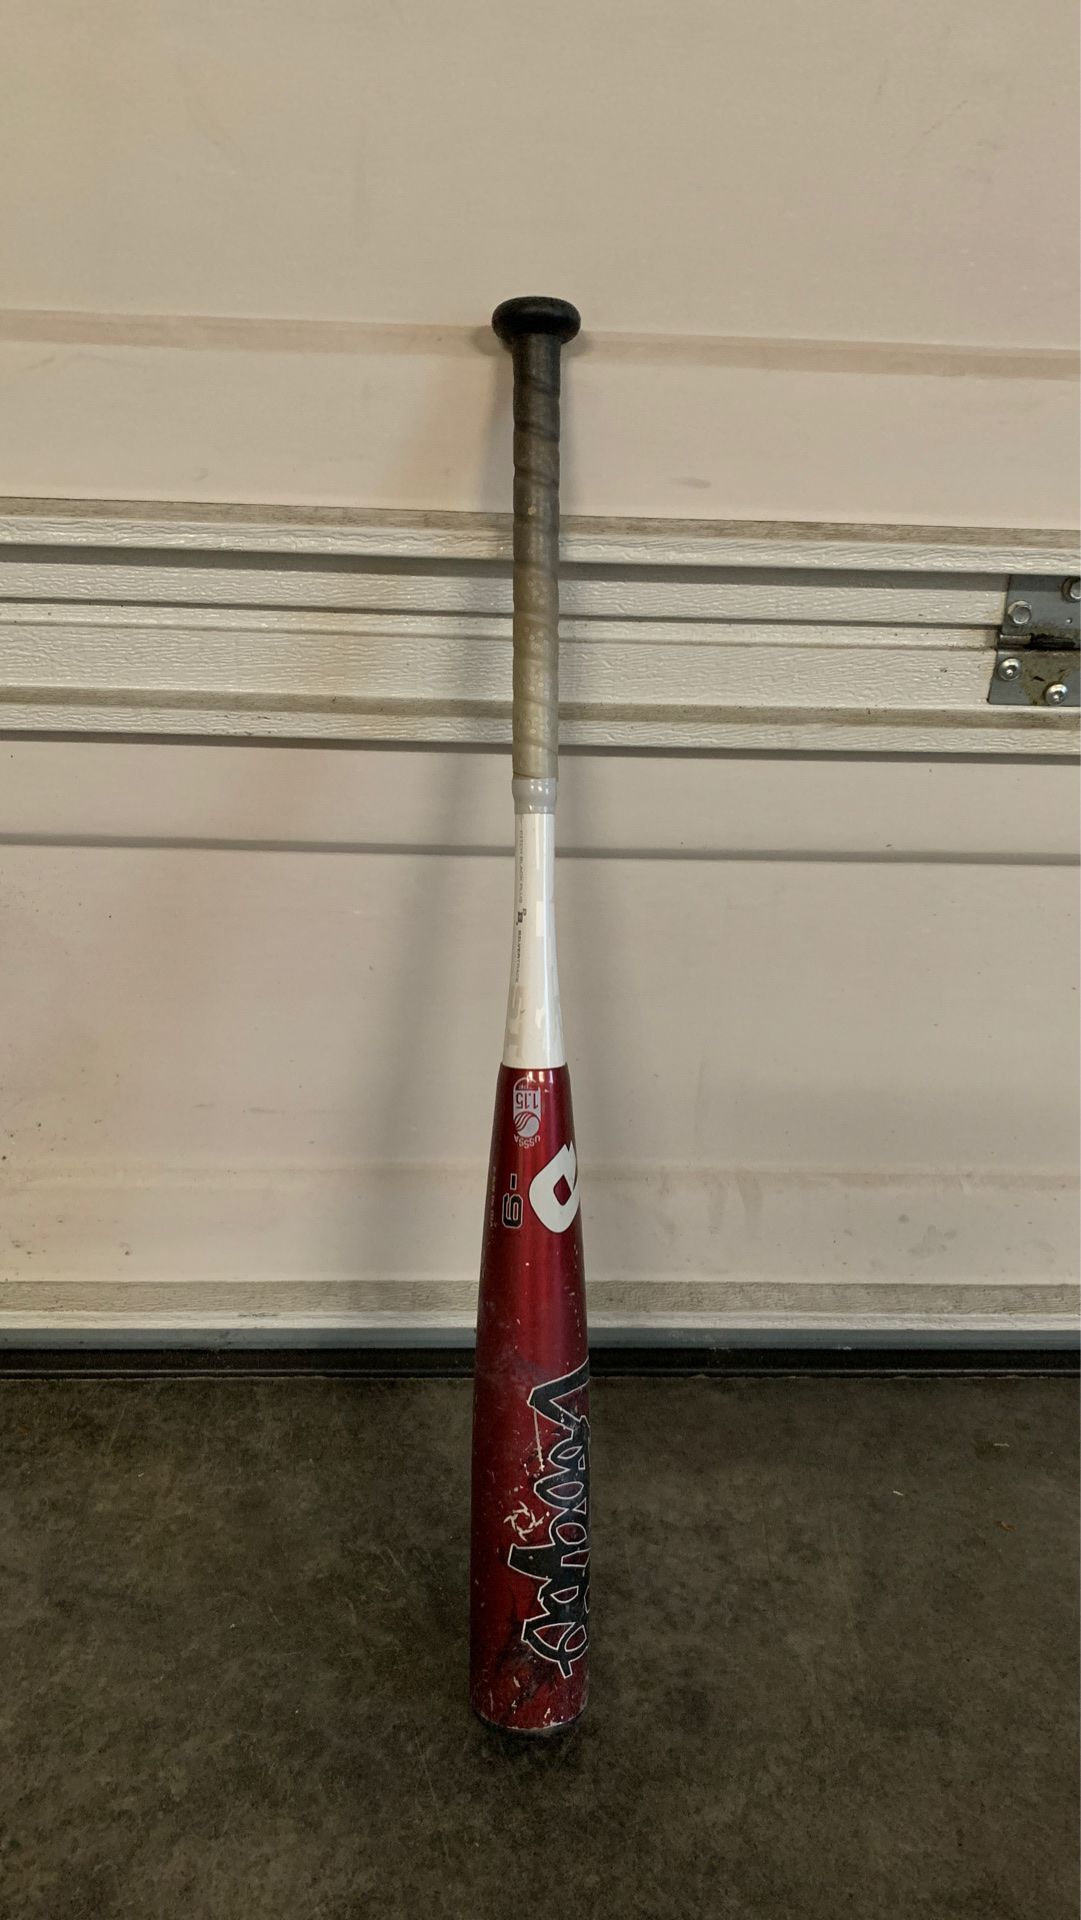 Demarini voodoo baseball bat 30/21 -9 bat